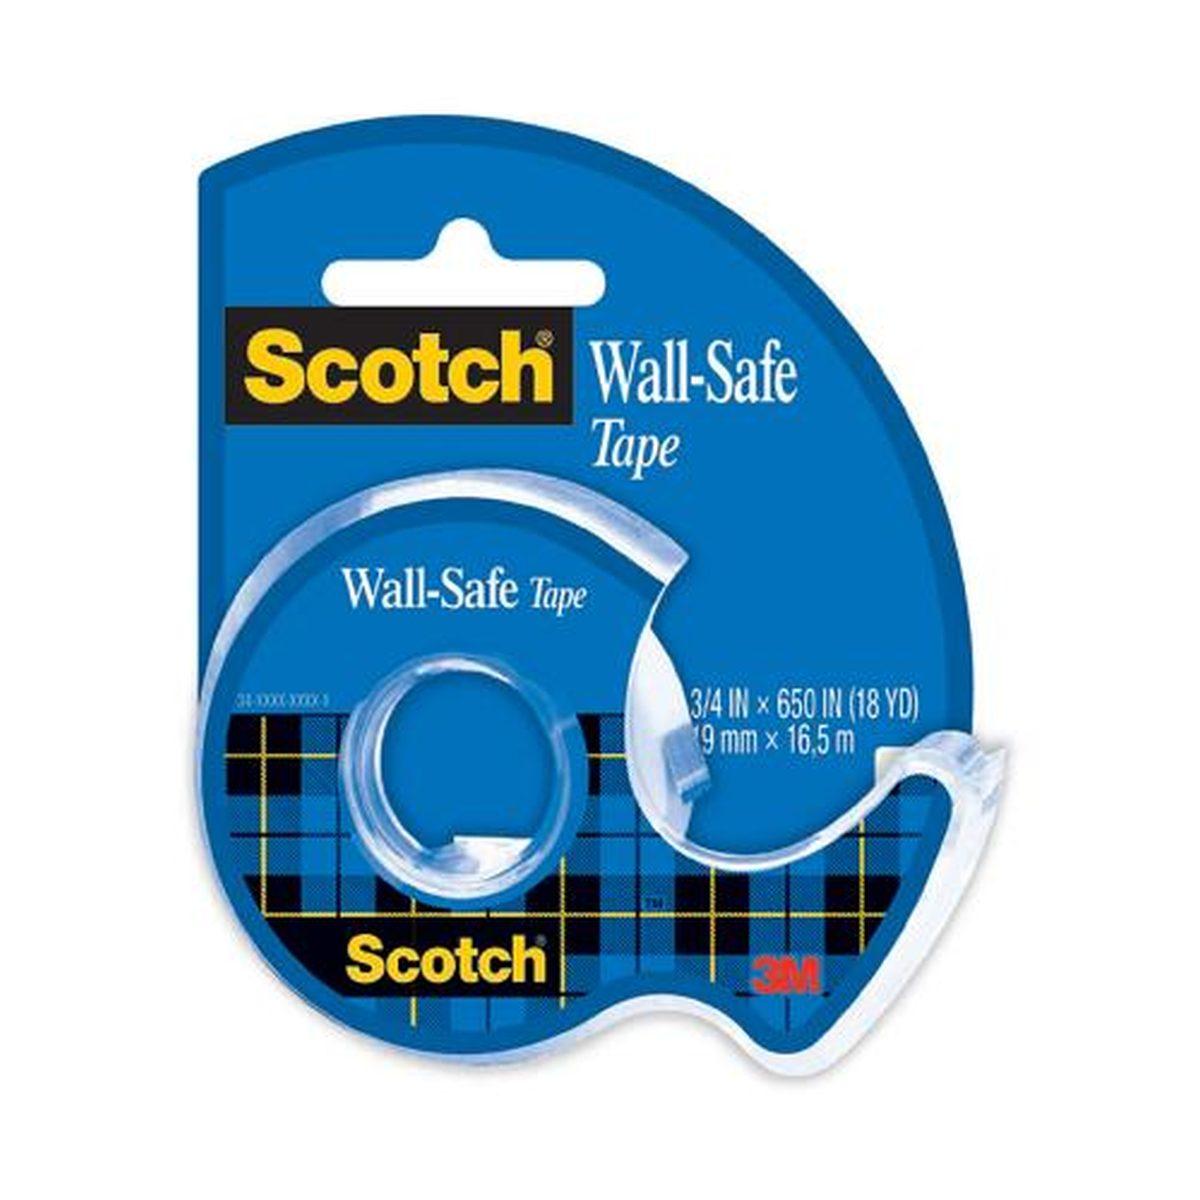 Scotch wall-safe tape - 19 mm x 16,5 mt